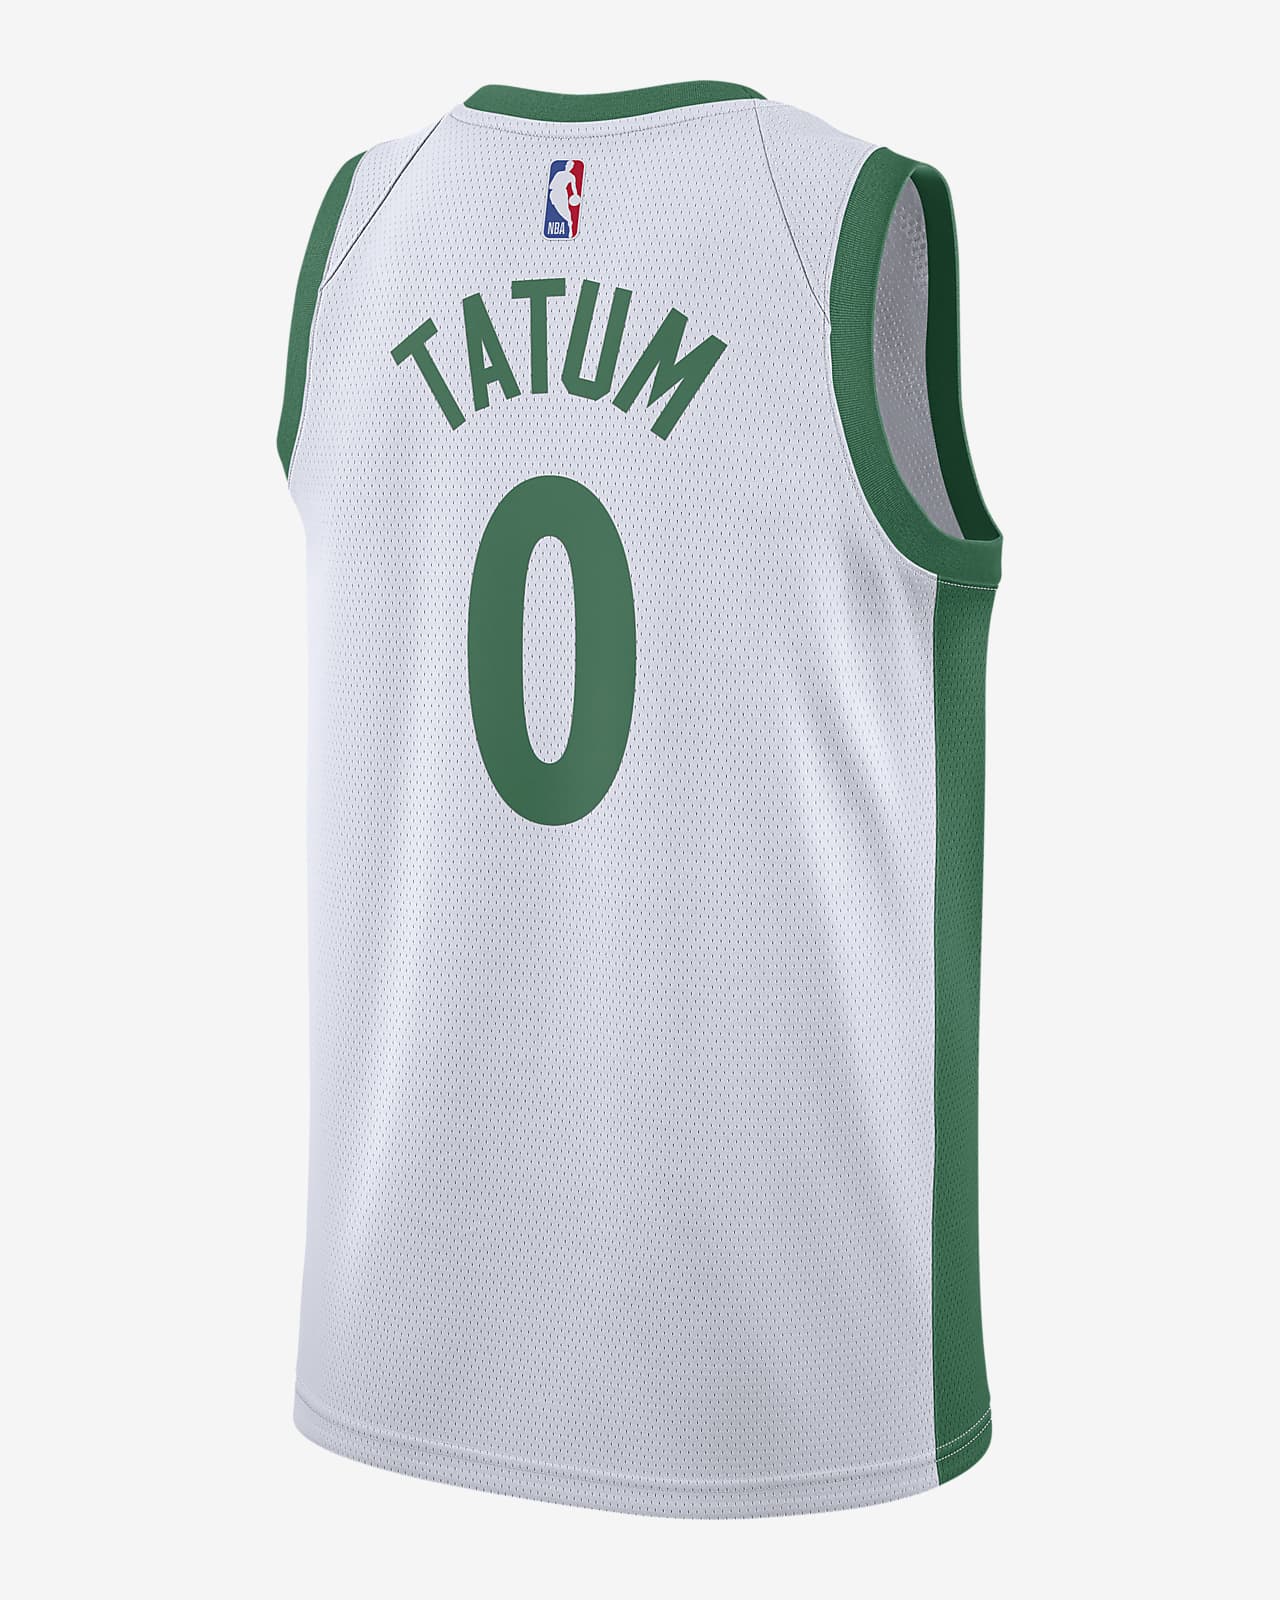 jayson tatum all star 2020 jersey